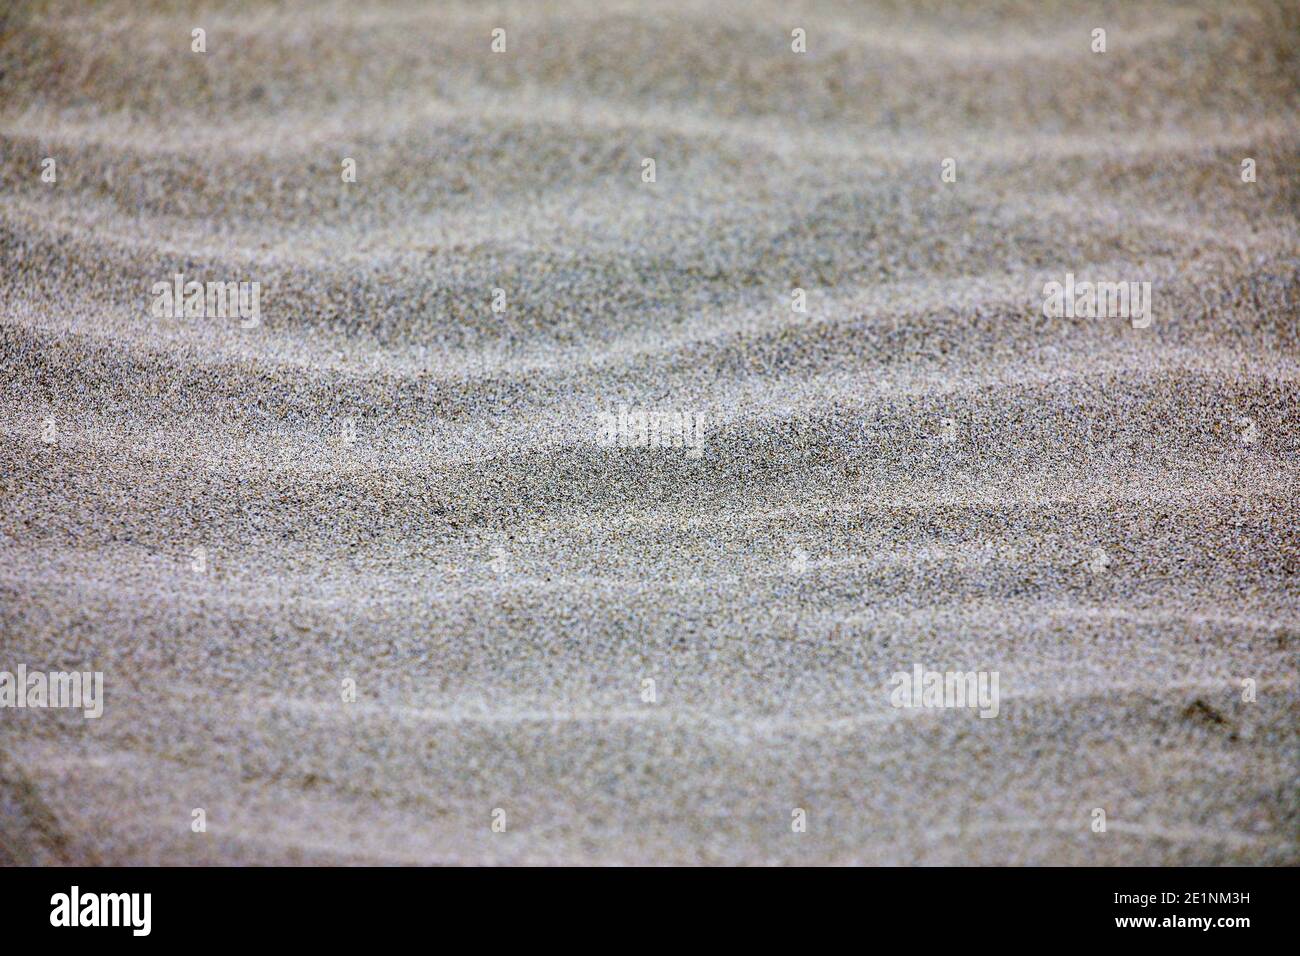 Close up on sandy beach Stock Photo